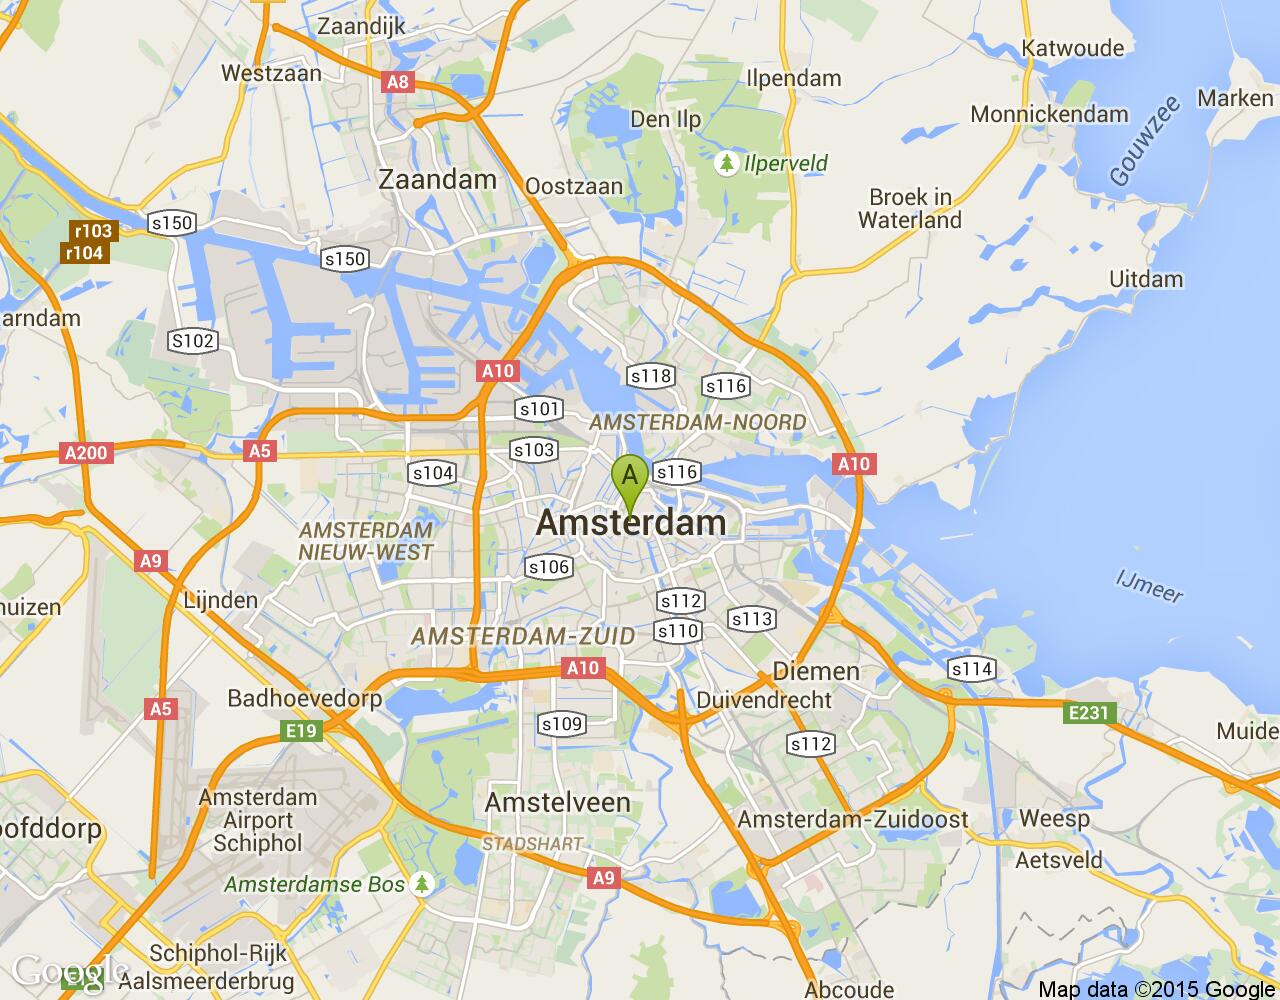 Дюссельдорф -амстердам-как быстро и недорого добраться? - советы, вопросы и ответы путешественникам на трипстере